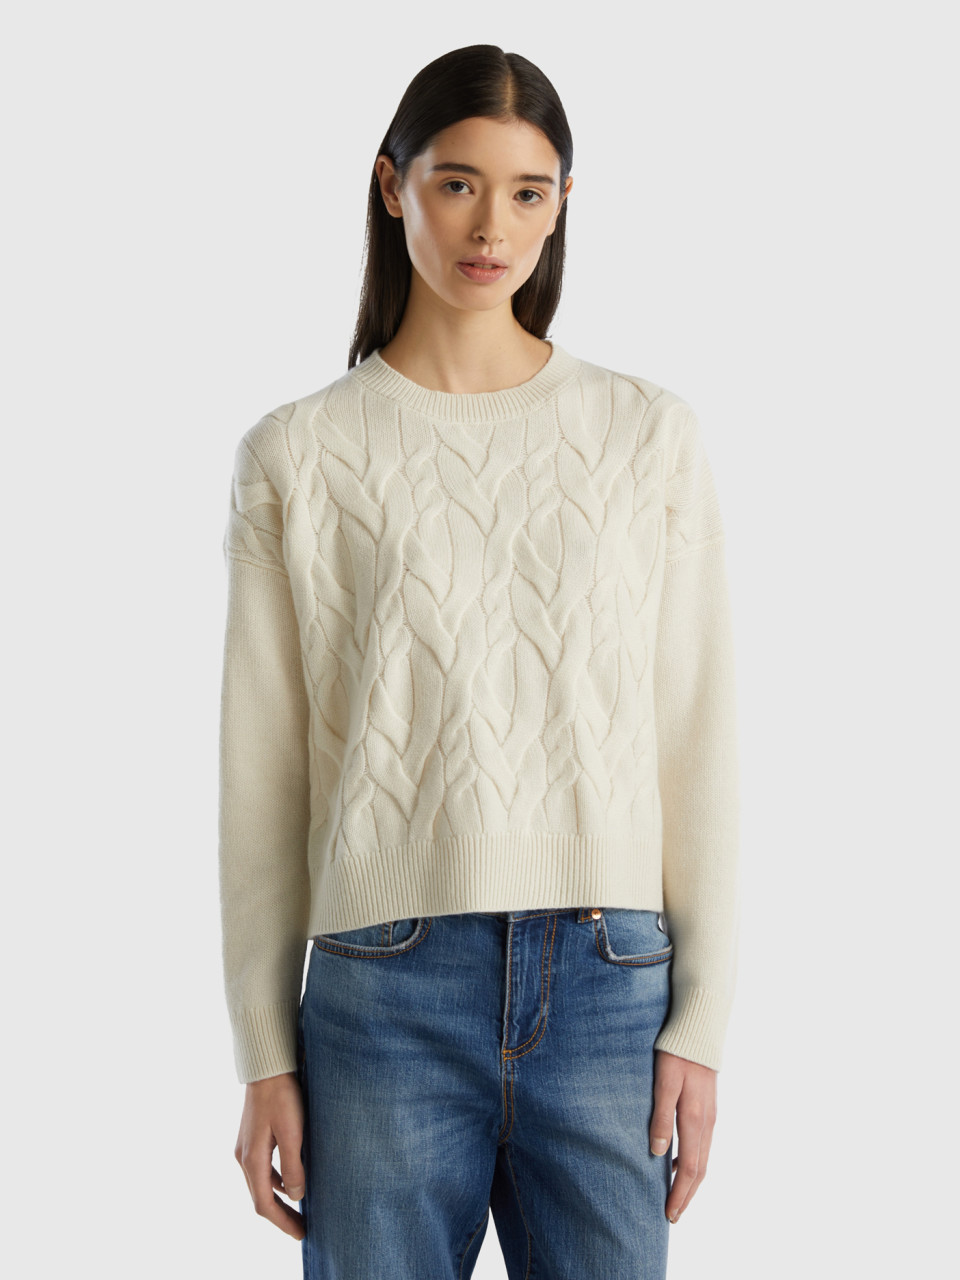 Benetton, Knit Sweater In Pure Cashmere, Creamy White, Women